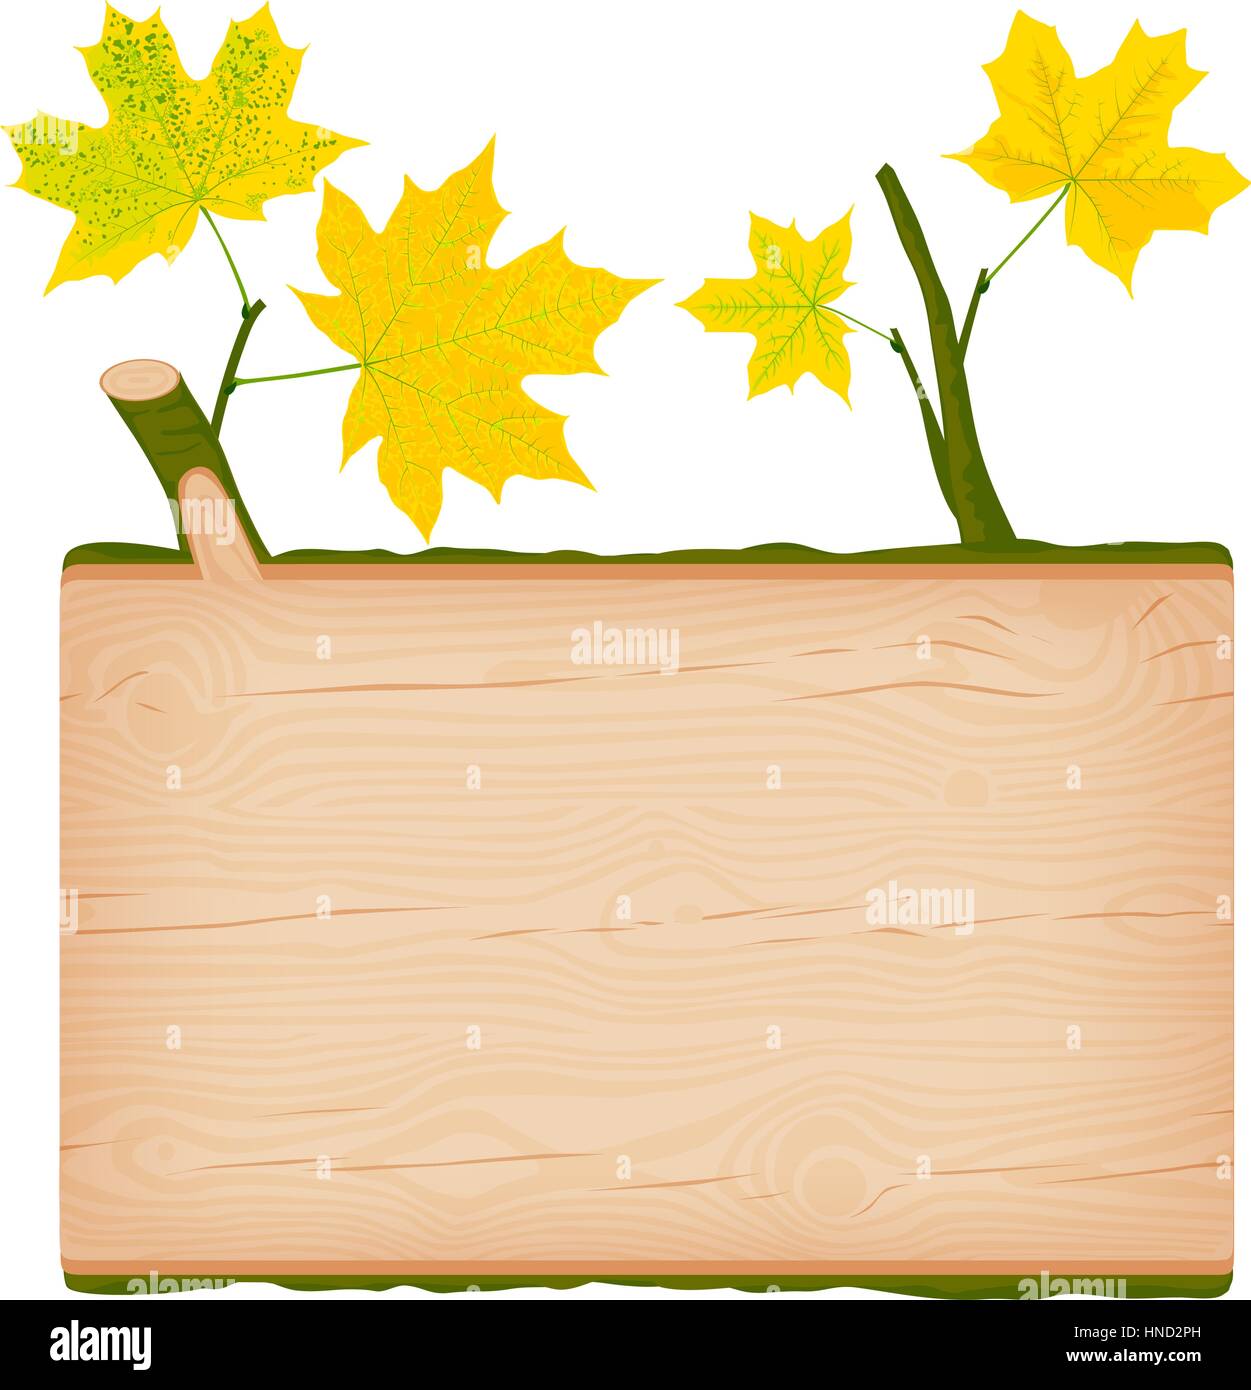 Testurizzato naturale in legno di acero cartello rettangolare giallo con foglie di autunno illustrazione vettoriale Illustrazione Vettoriale